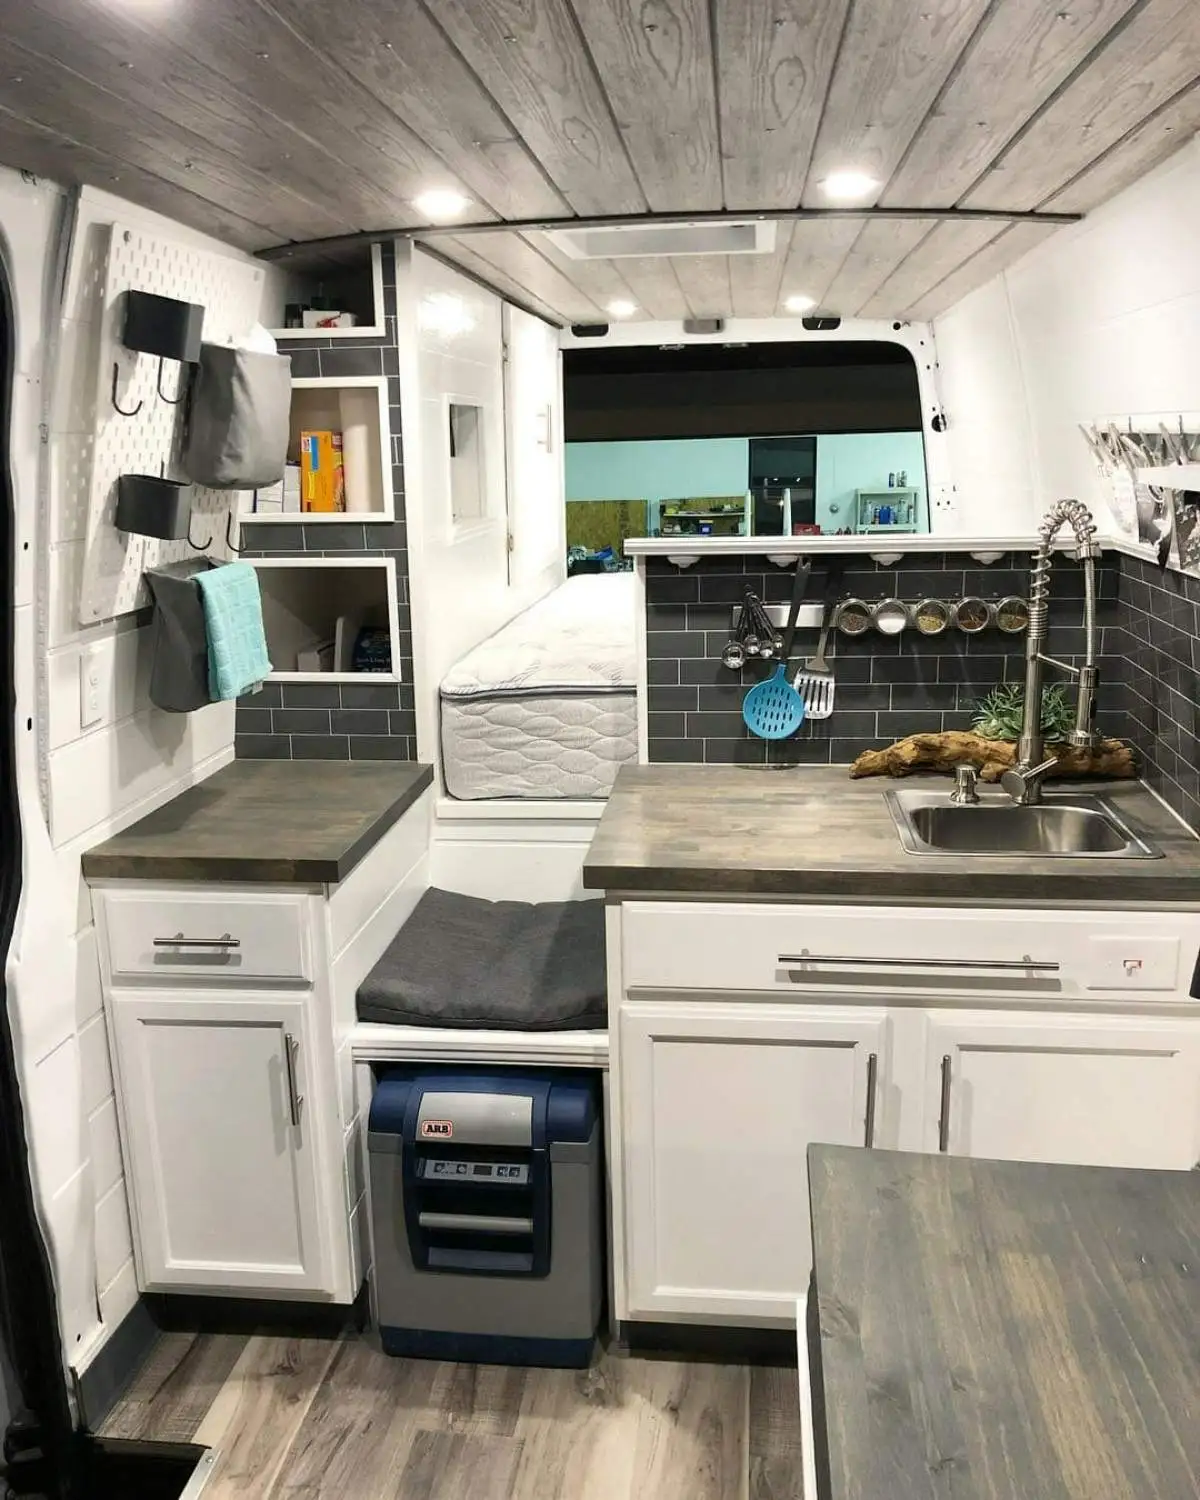 کابینت آشپزخانه کمپر به رنگ سفید همراه با یخچال کوچک